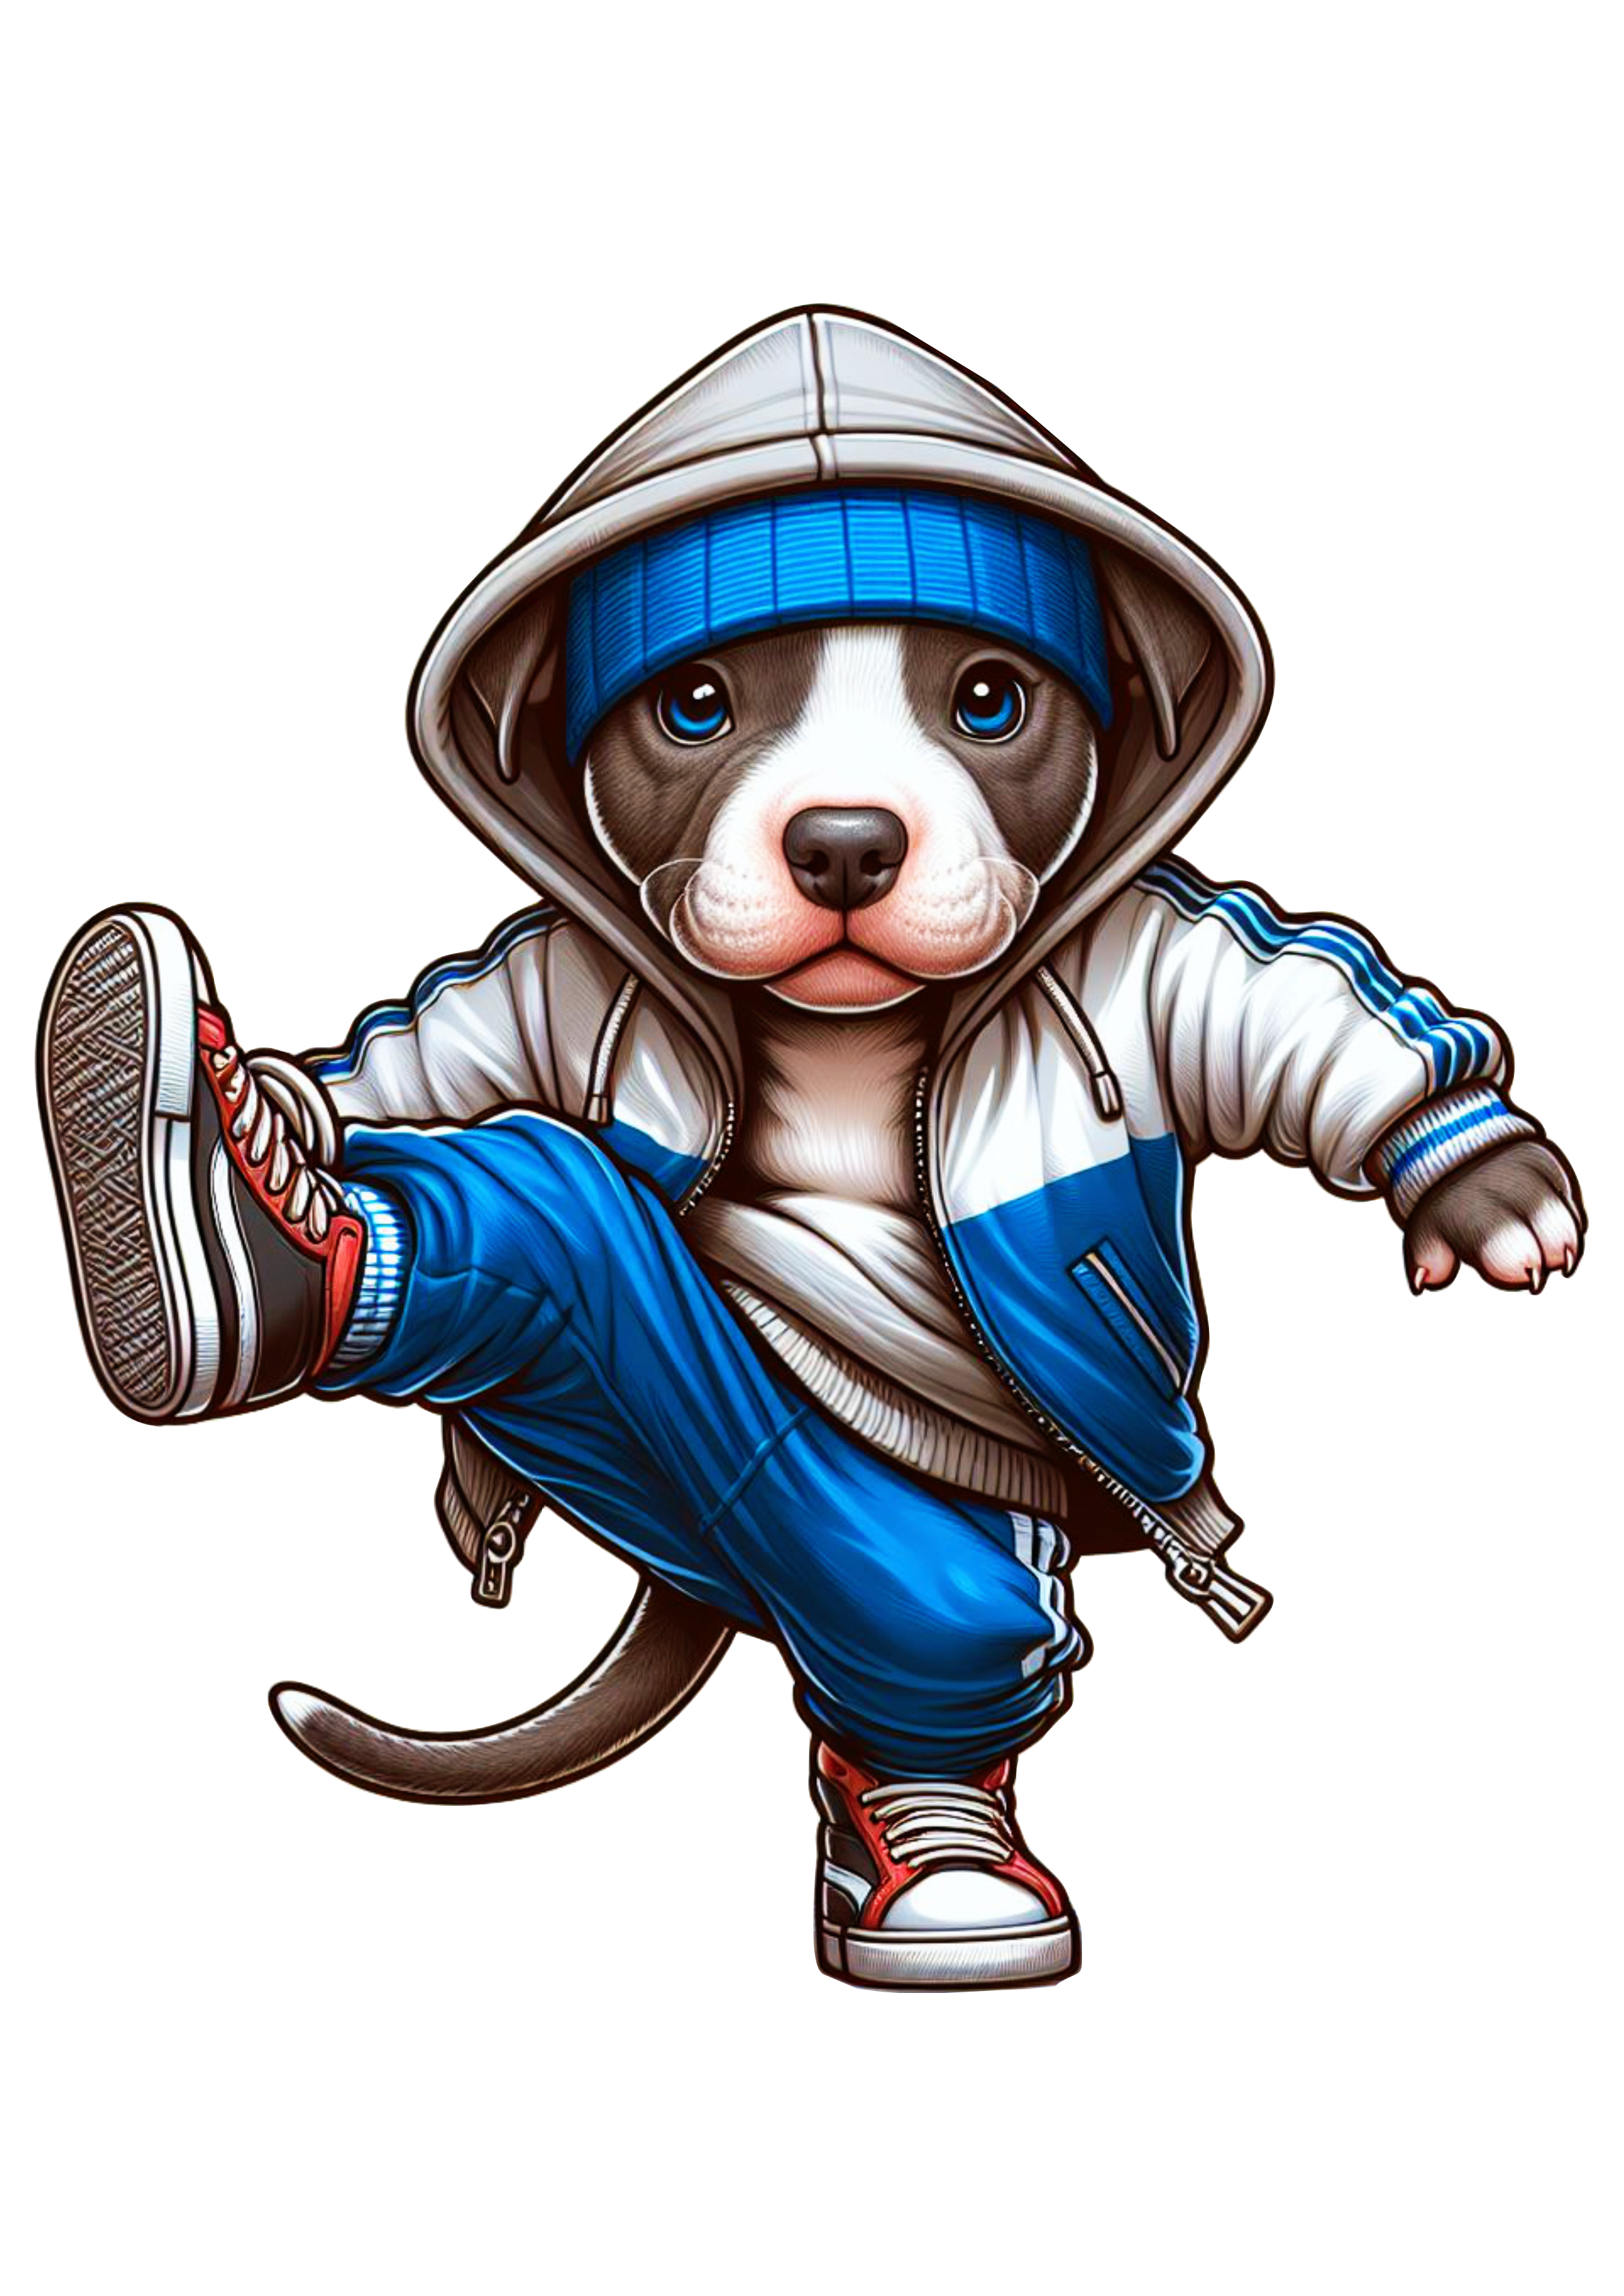 Pitbull cachorro fofinho de moletom azul dançando breakdance Power move png